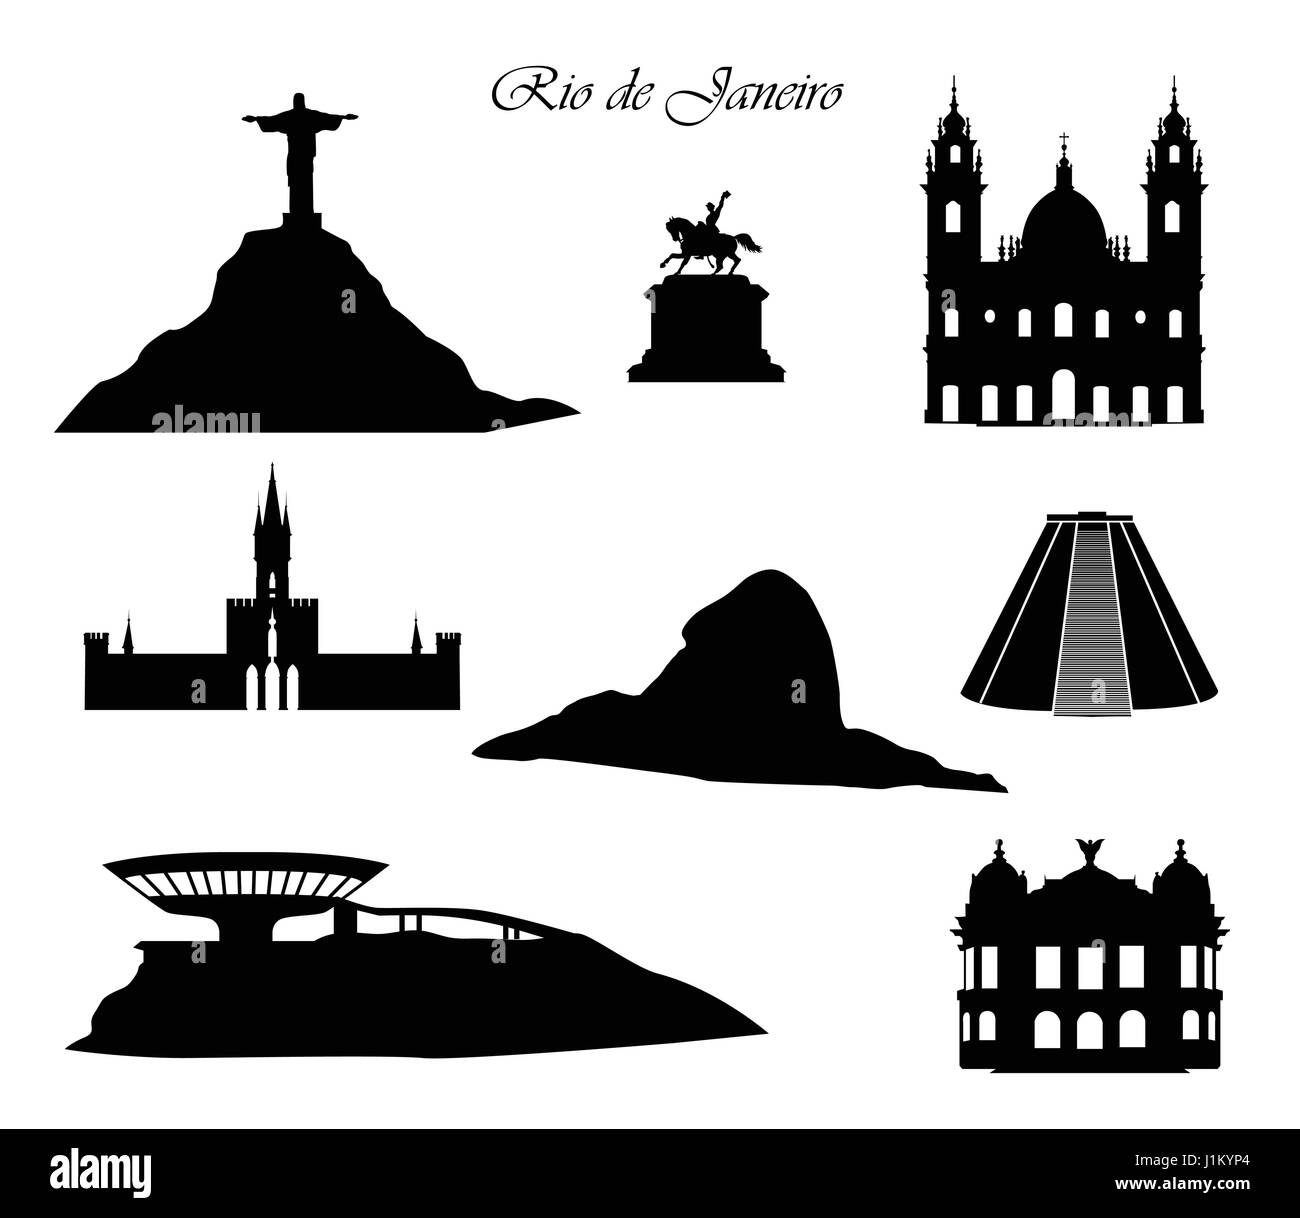 Rio de Janeiro Stadt Zeichen.. stadtbild Silhouette mit Gebäude und Berge. Stock Vektor